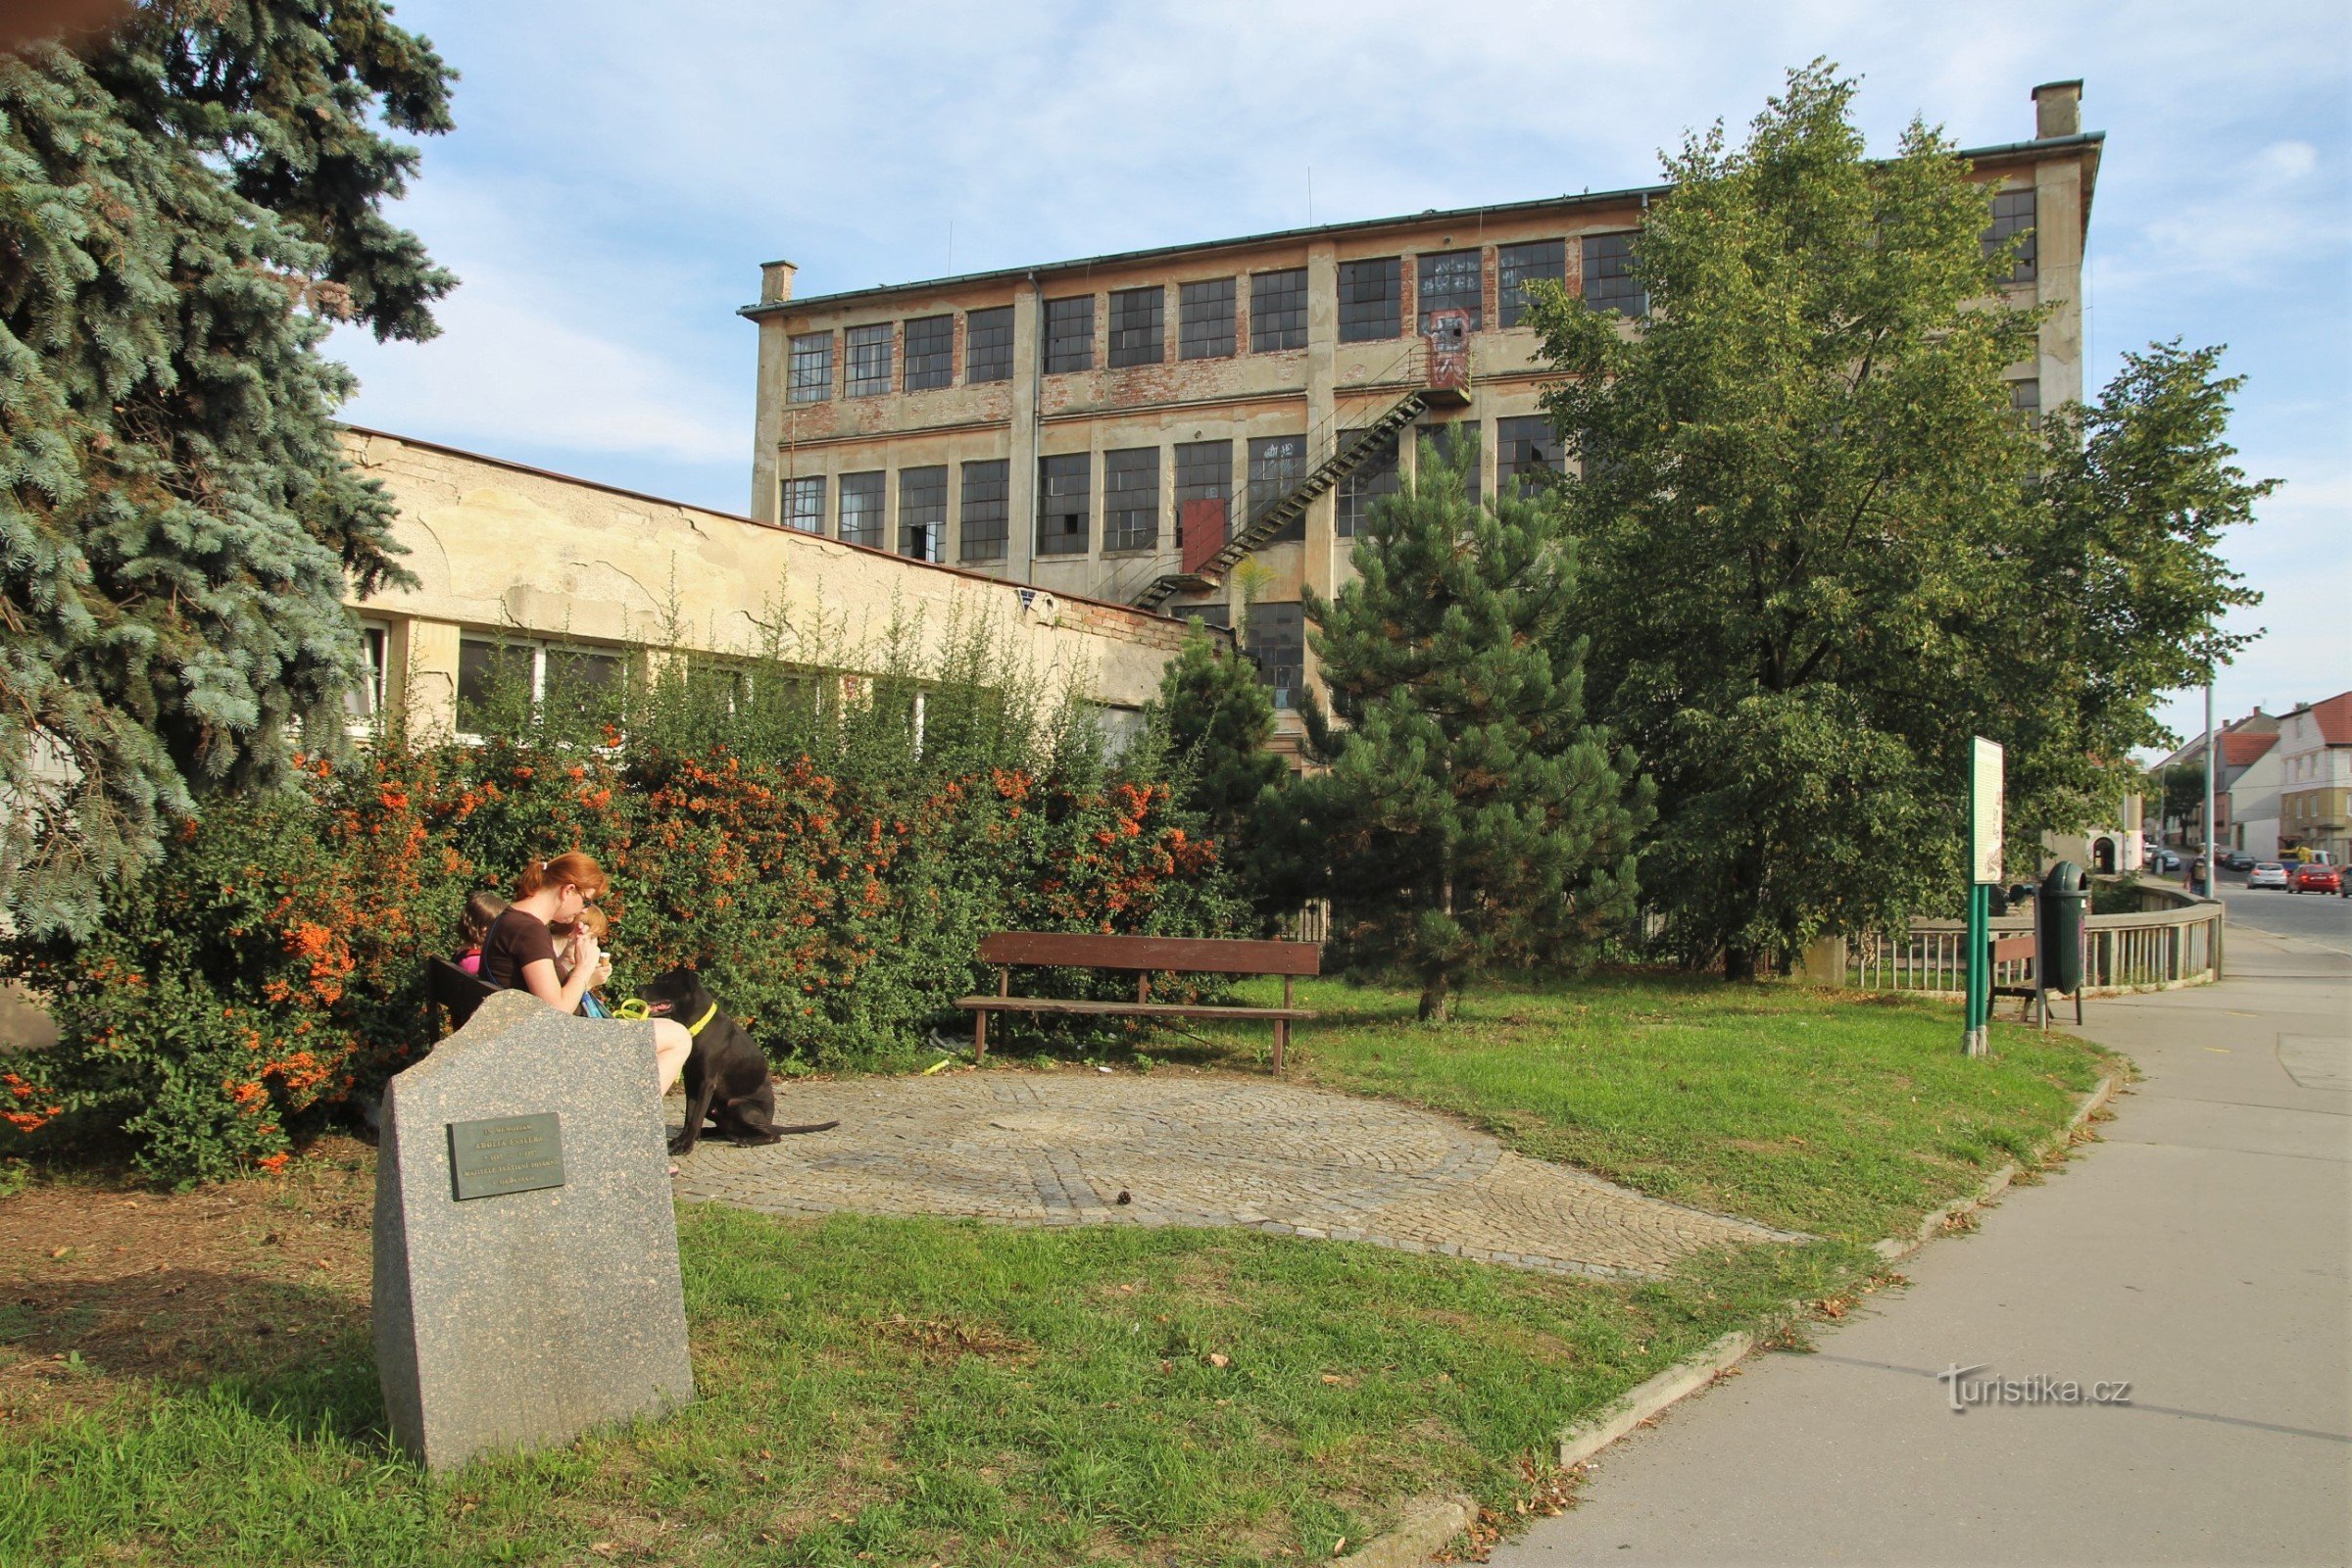 Памятник Адольфу Эсслеру, на заднем плане здание фабрики Эсслера